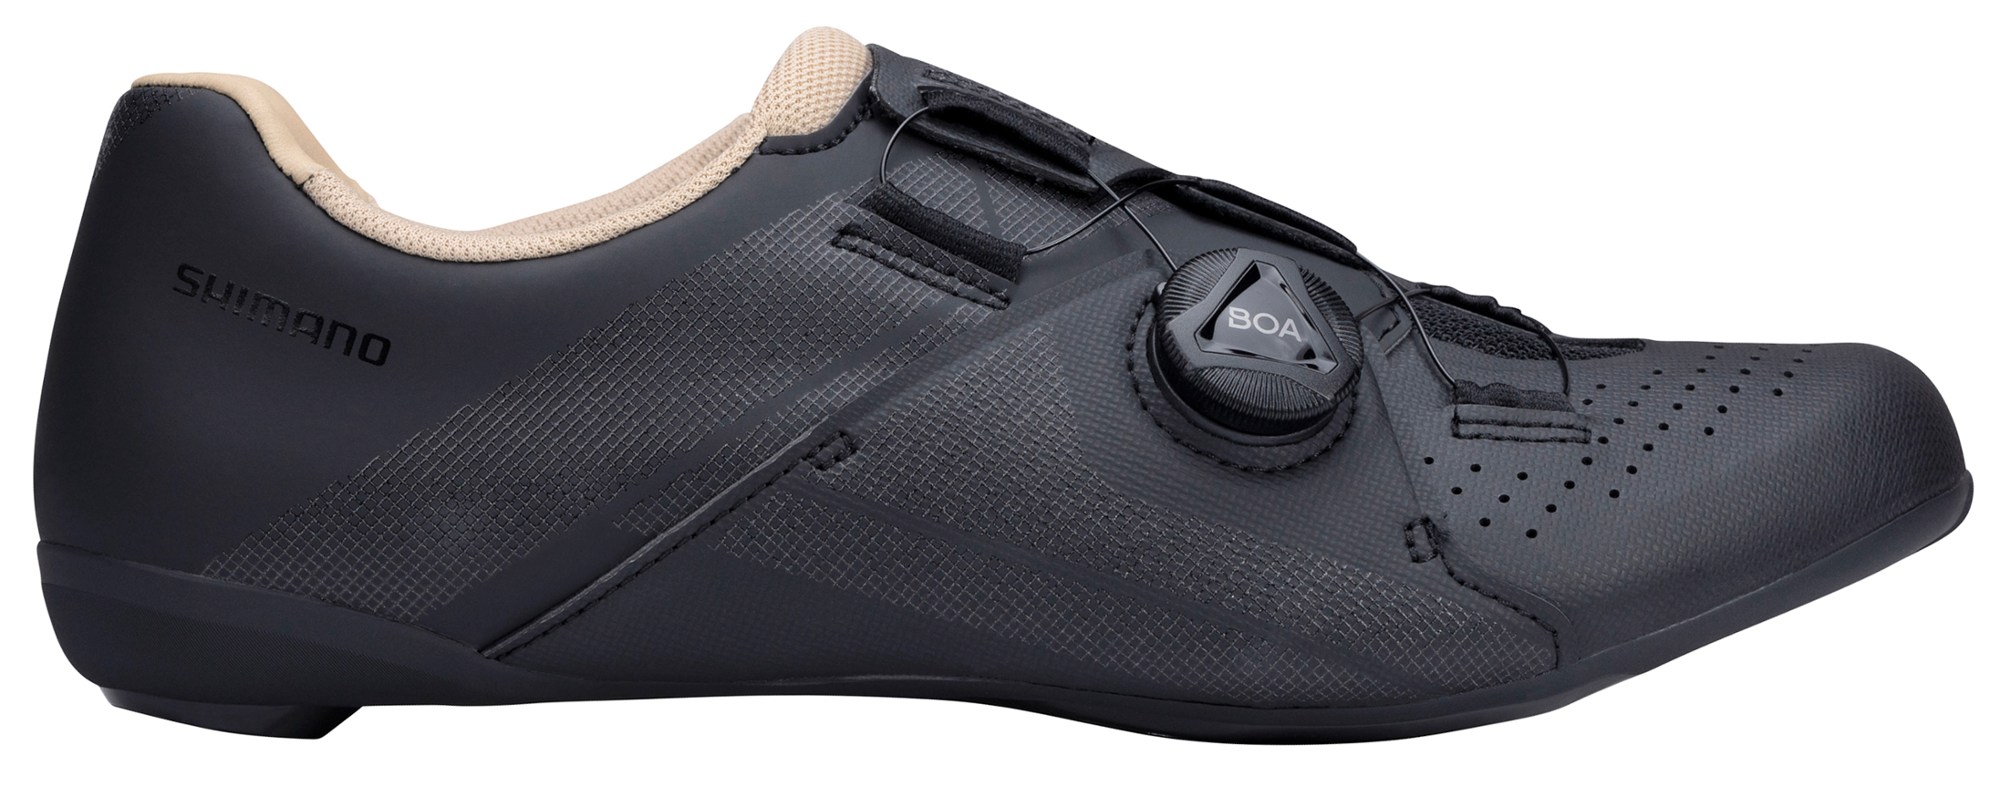 Шоссейные велосипедные туфли RC3 — женские Shimano, черный